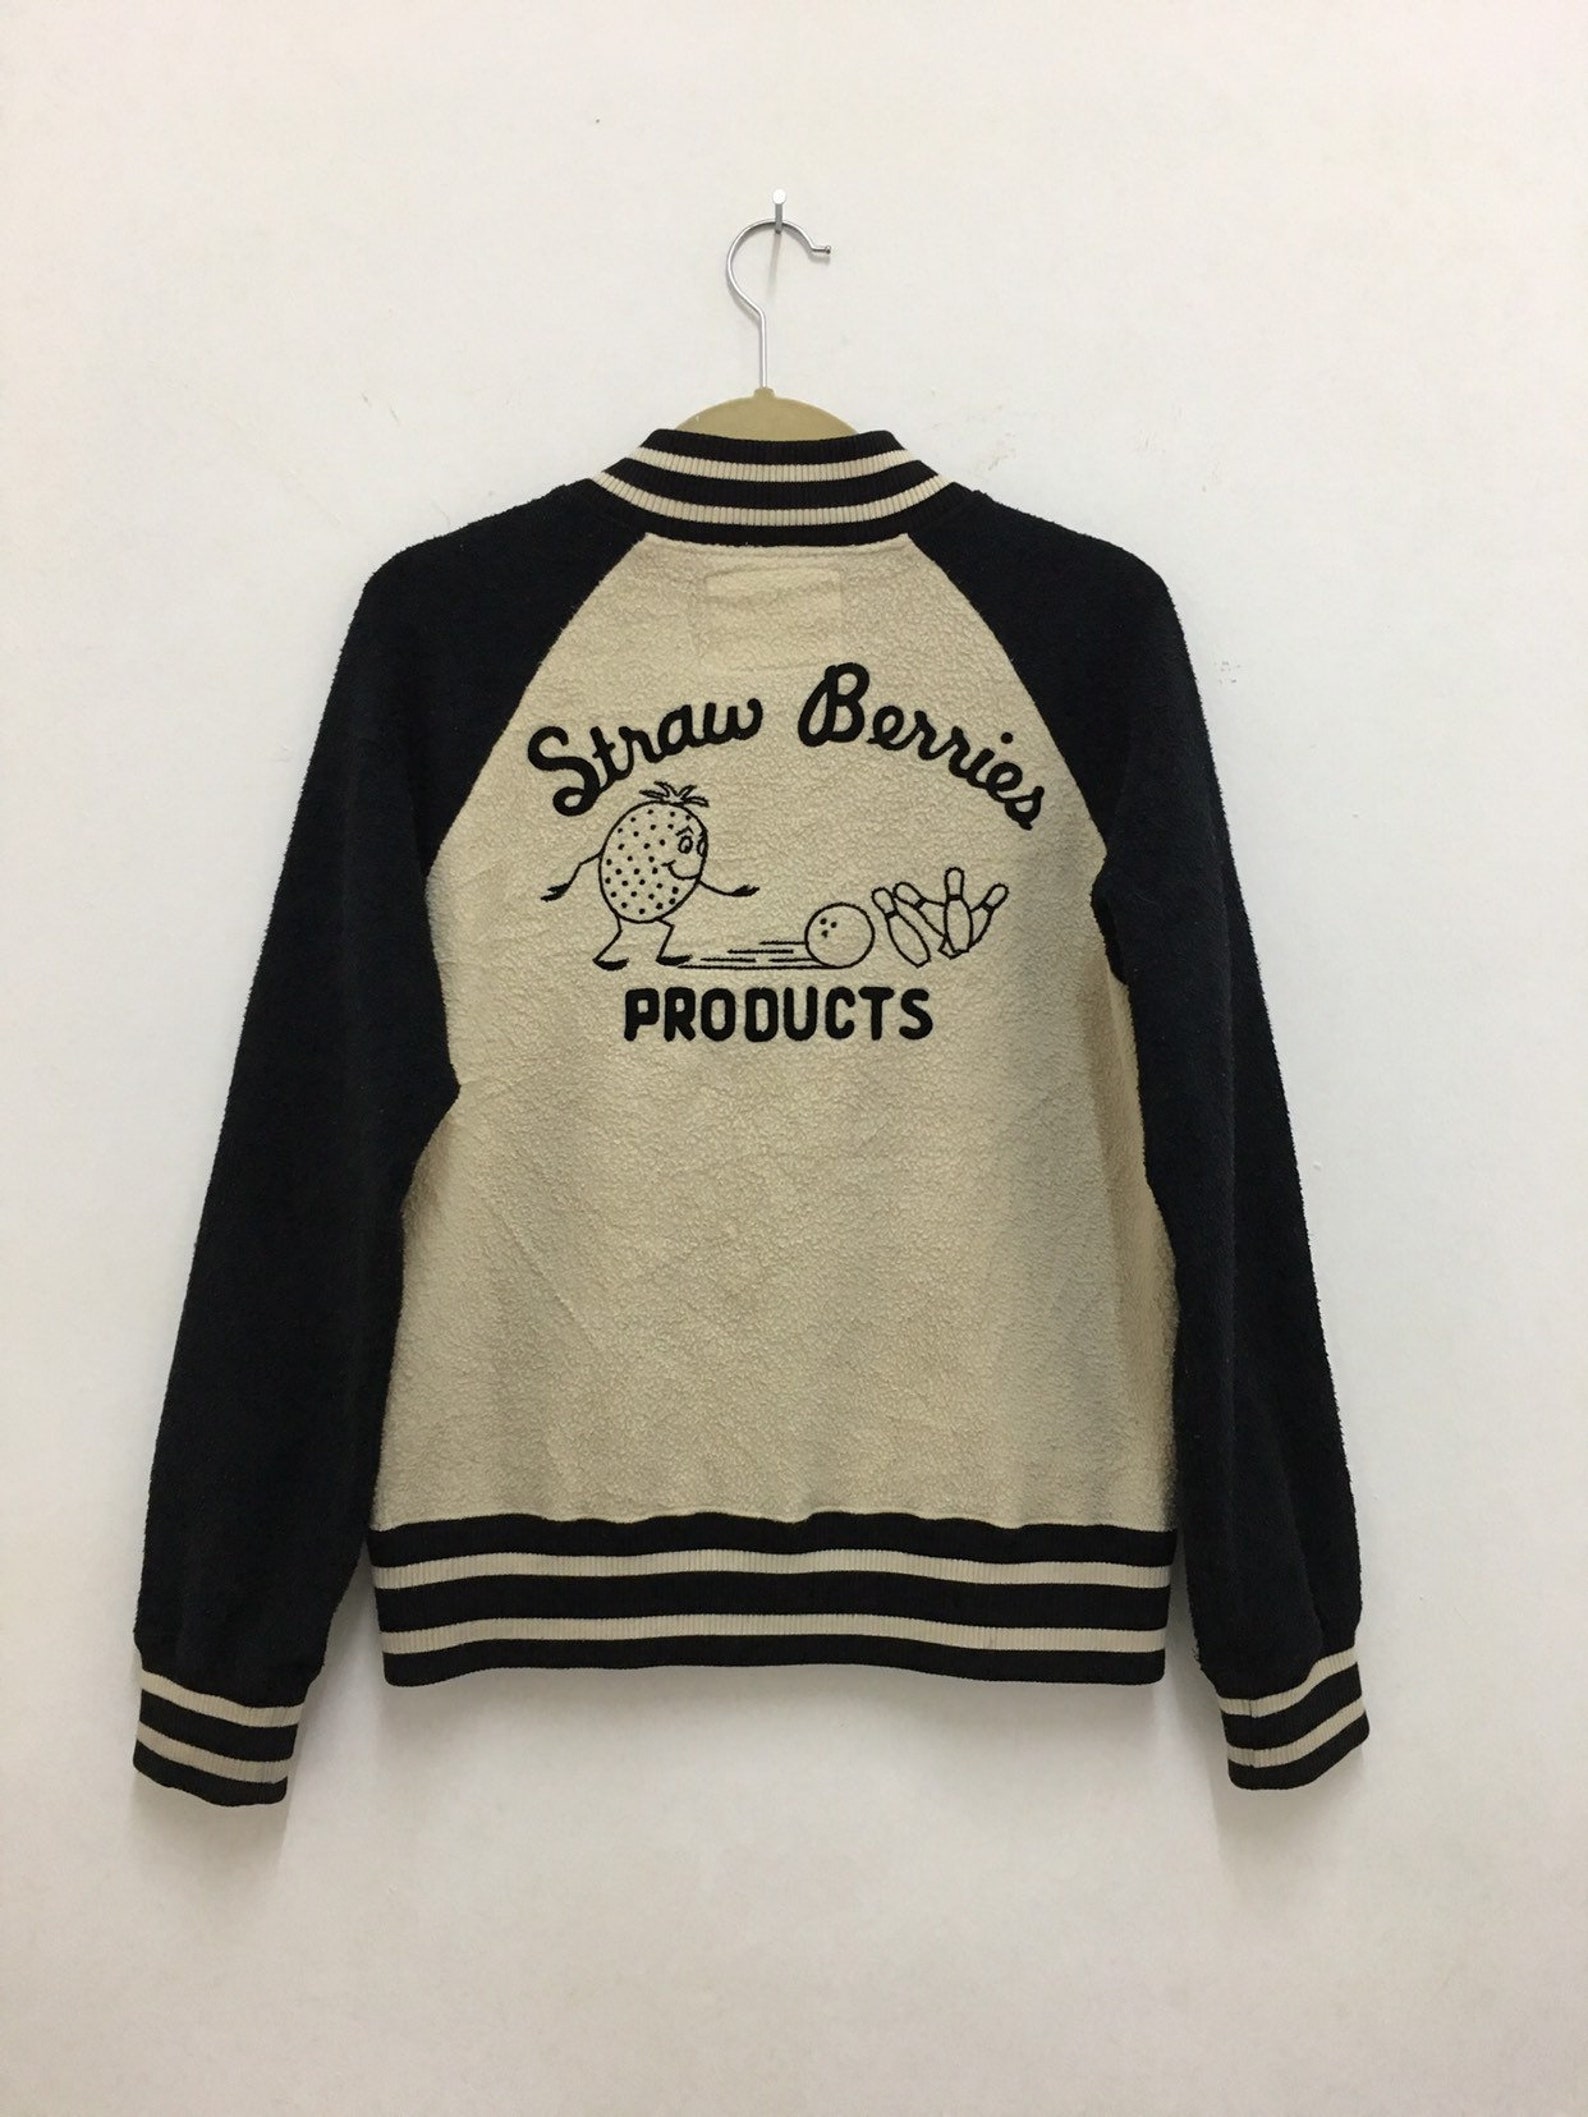 Hysteric Glamour Jacket Fleece Varsity Bowling Bomber Jacket | Etsy